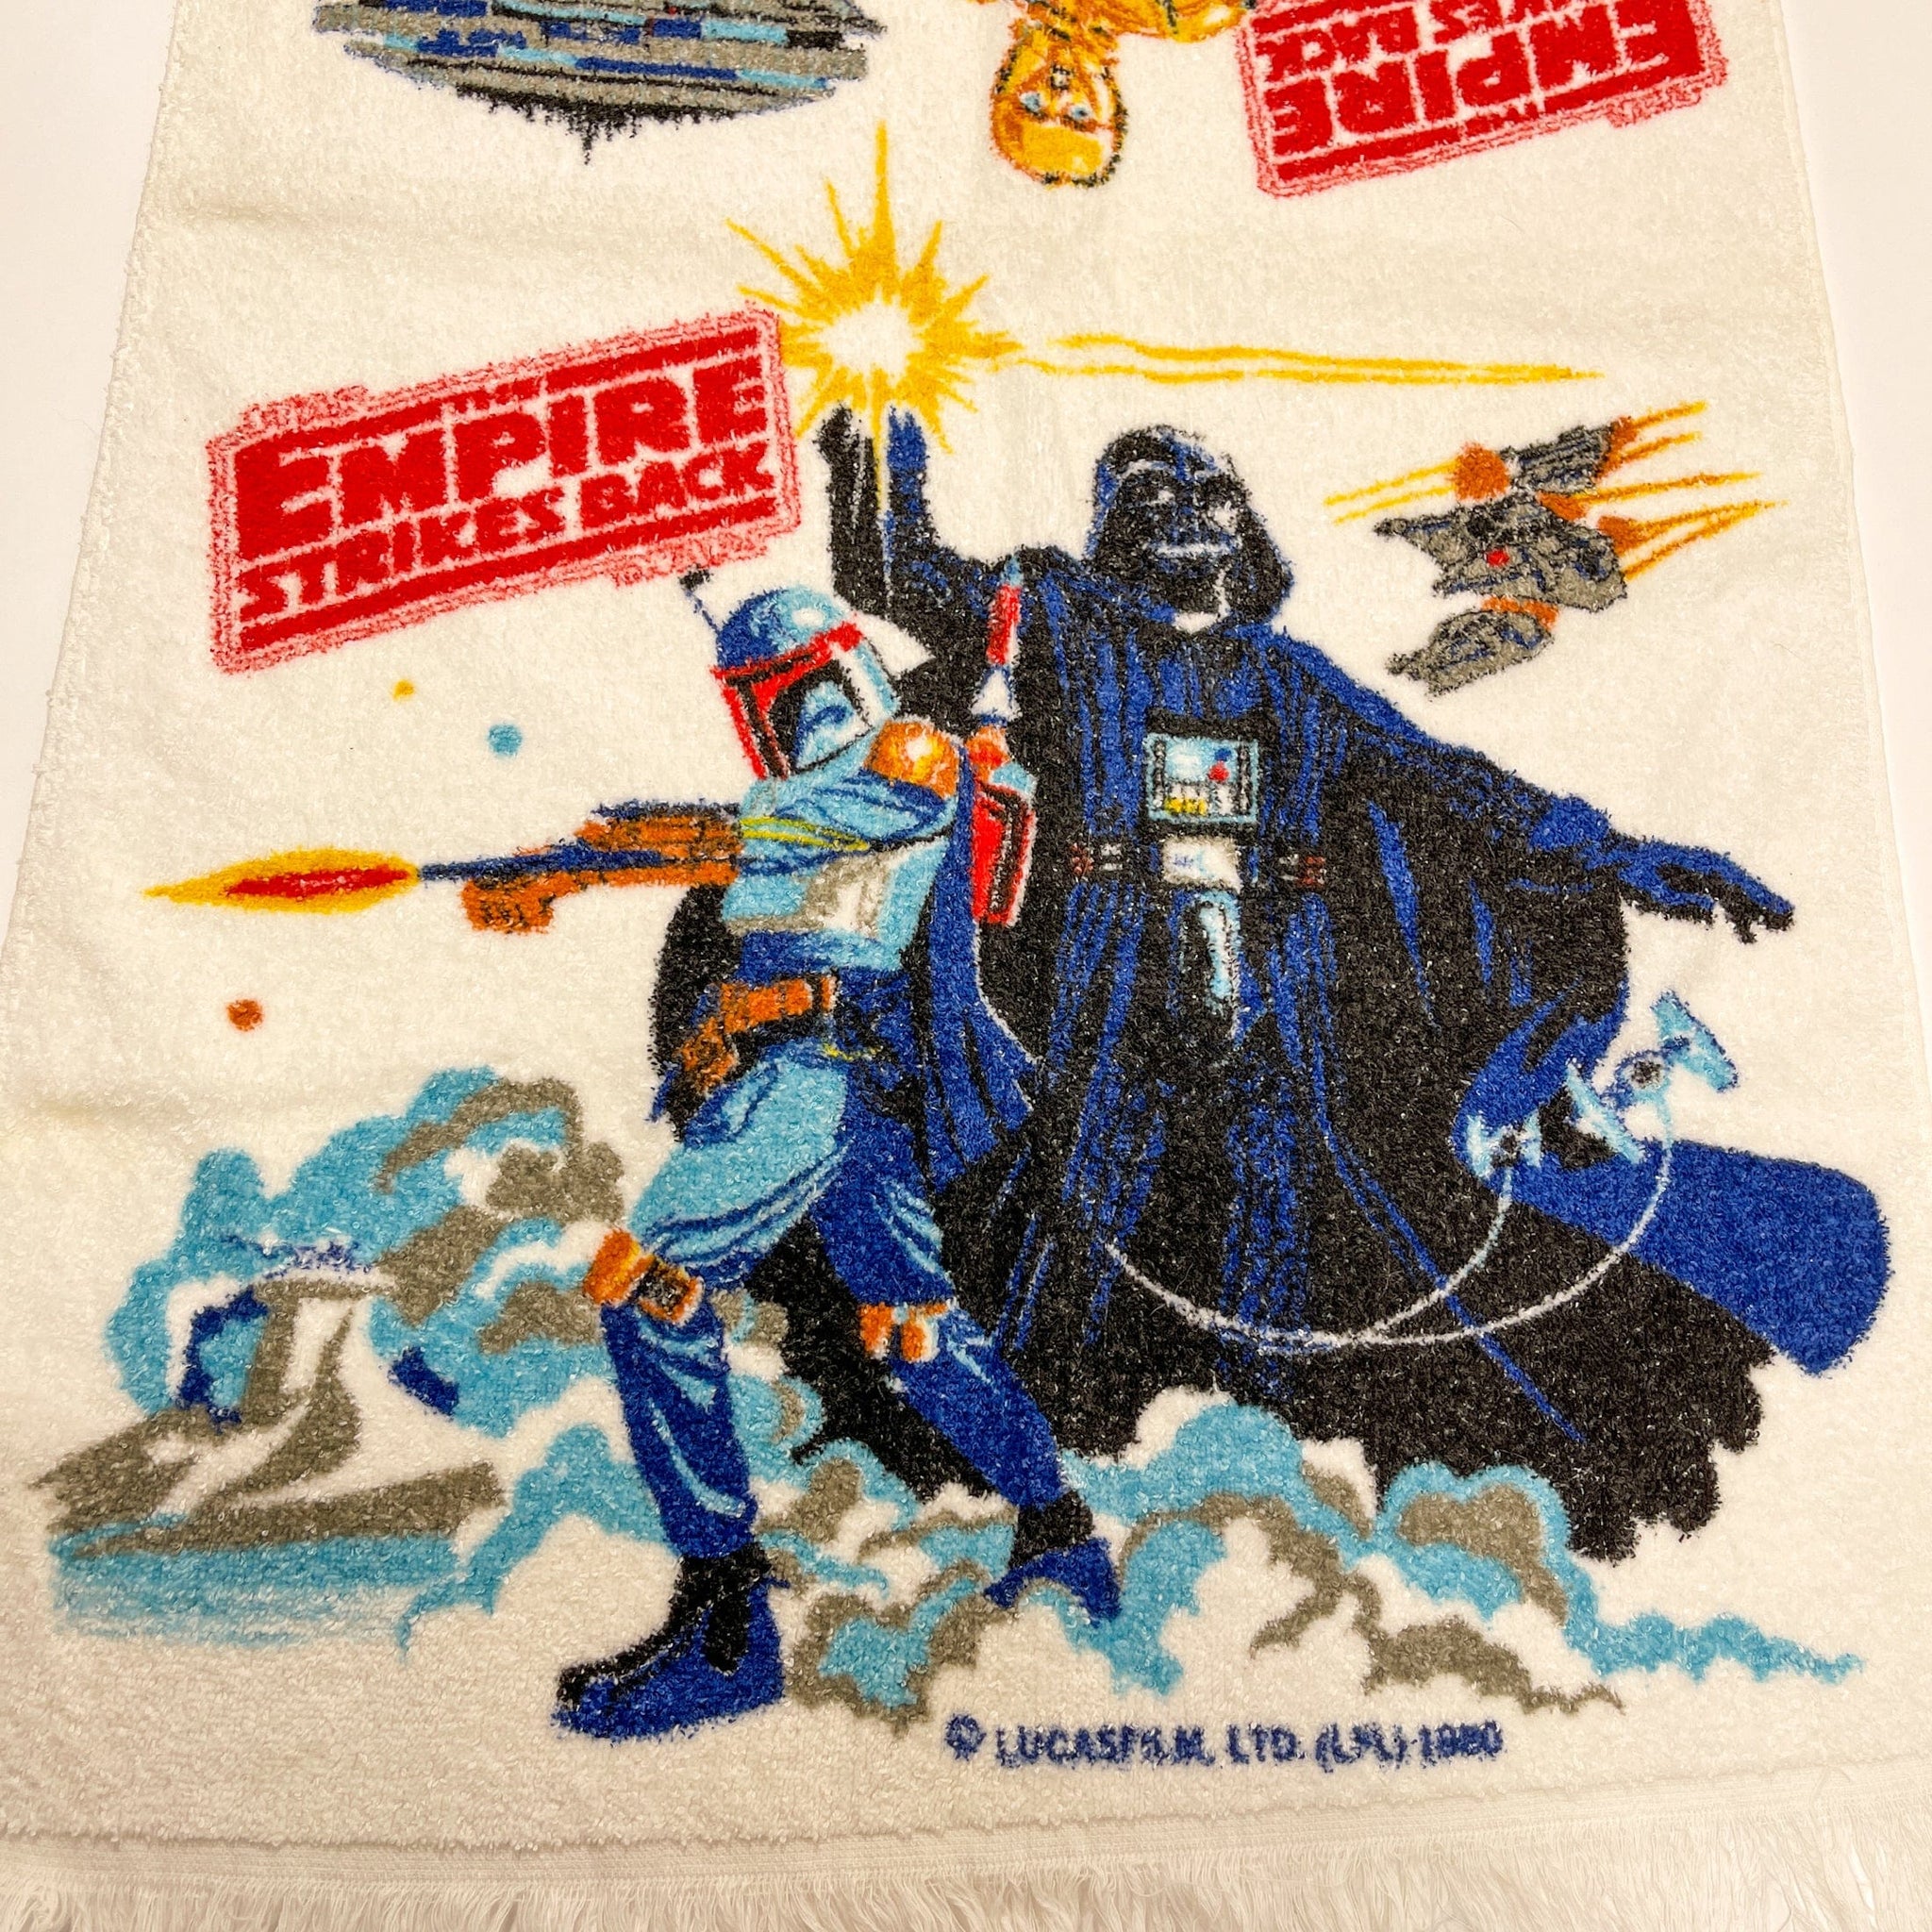 Star Wars #5 Bath Towel by Michael Kerferd - Pixels